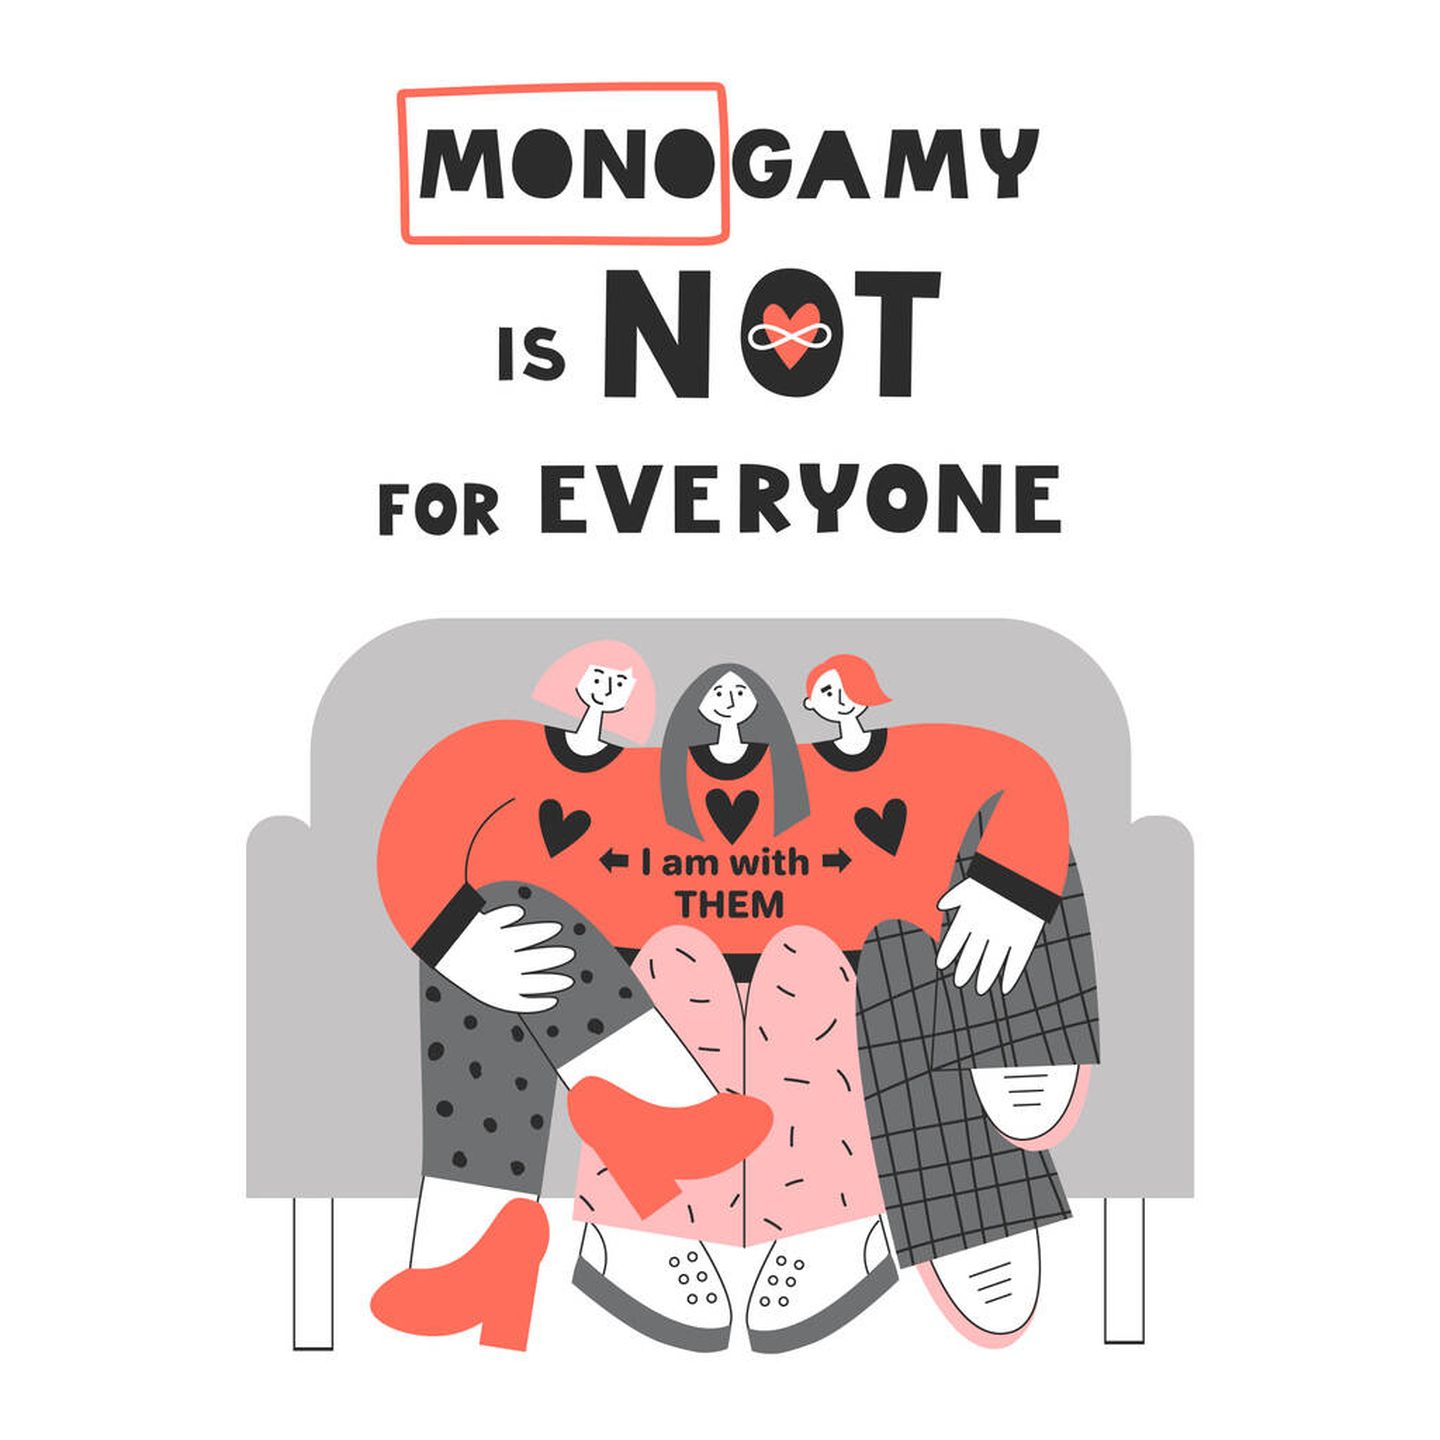 'La monogamia no es para todo el mundo' (iStock)